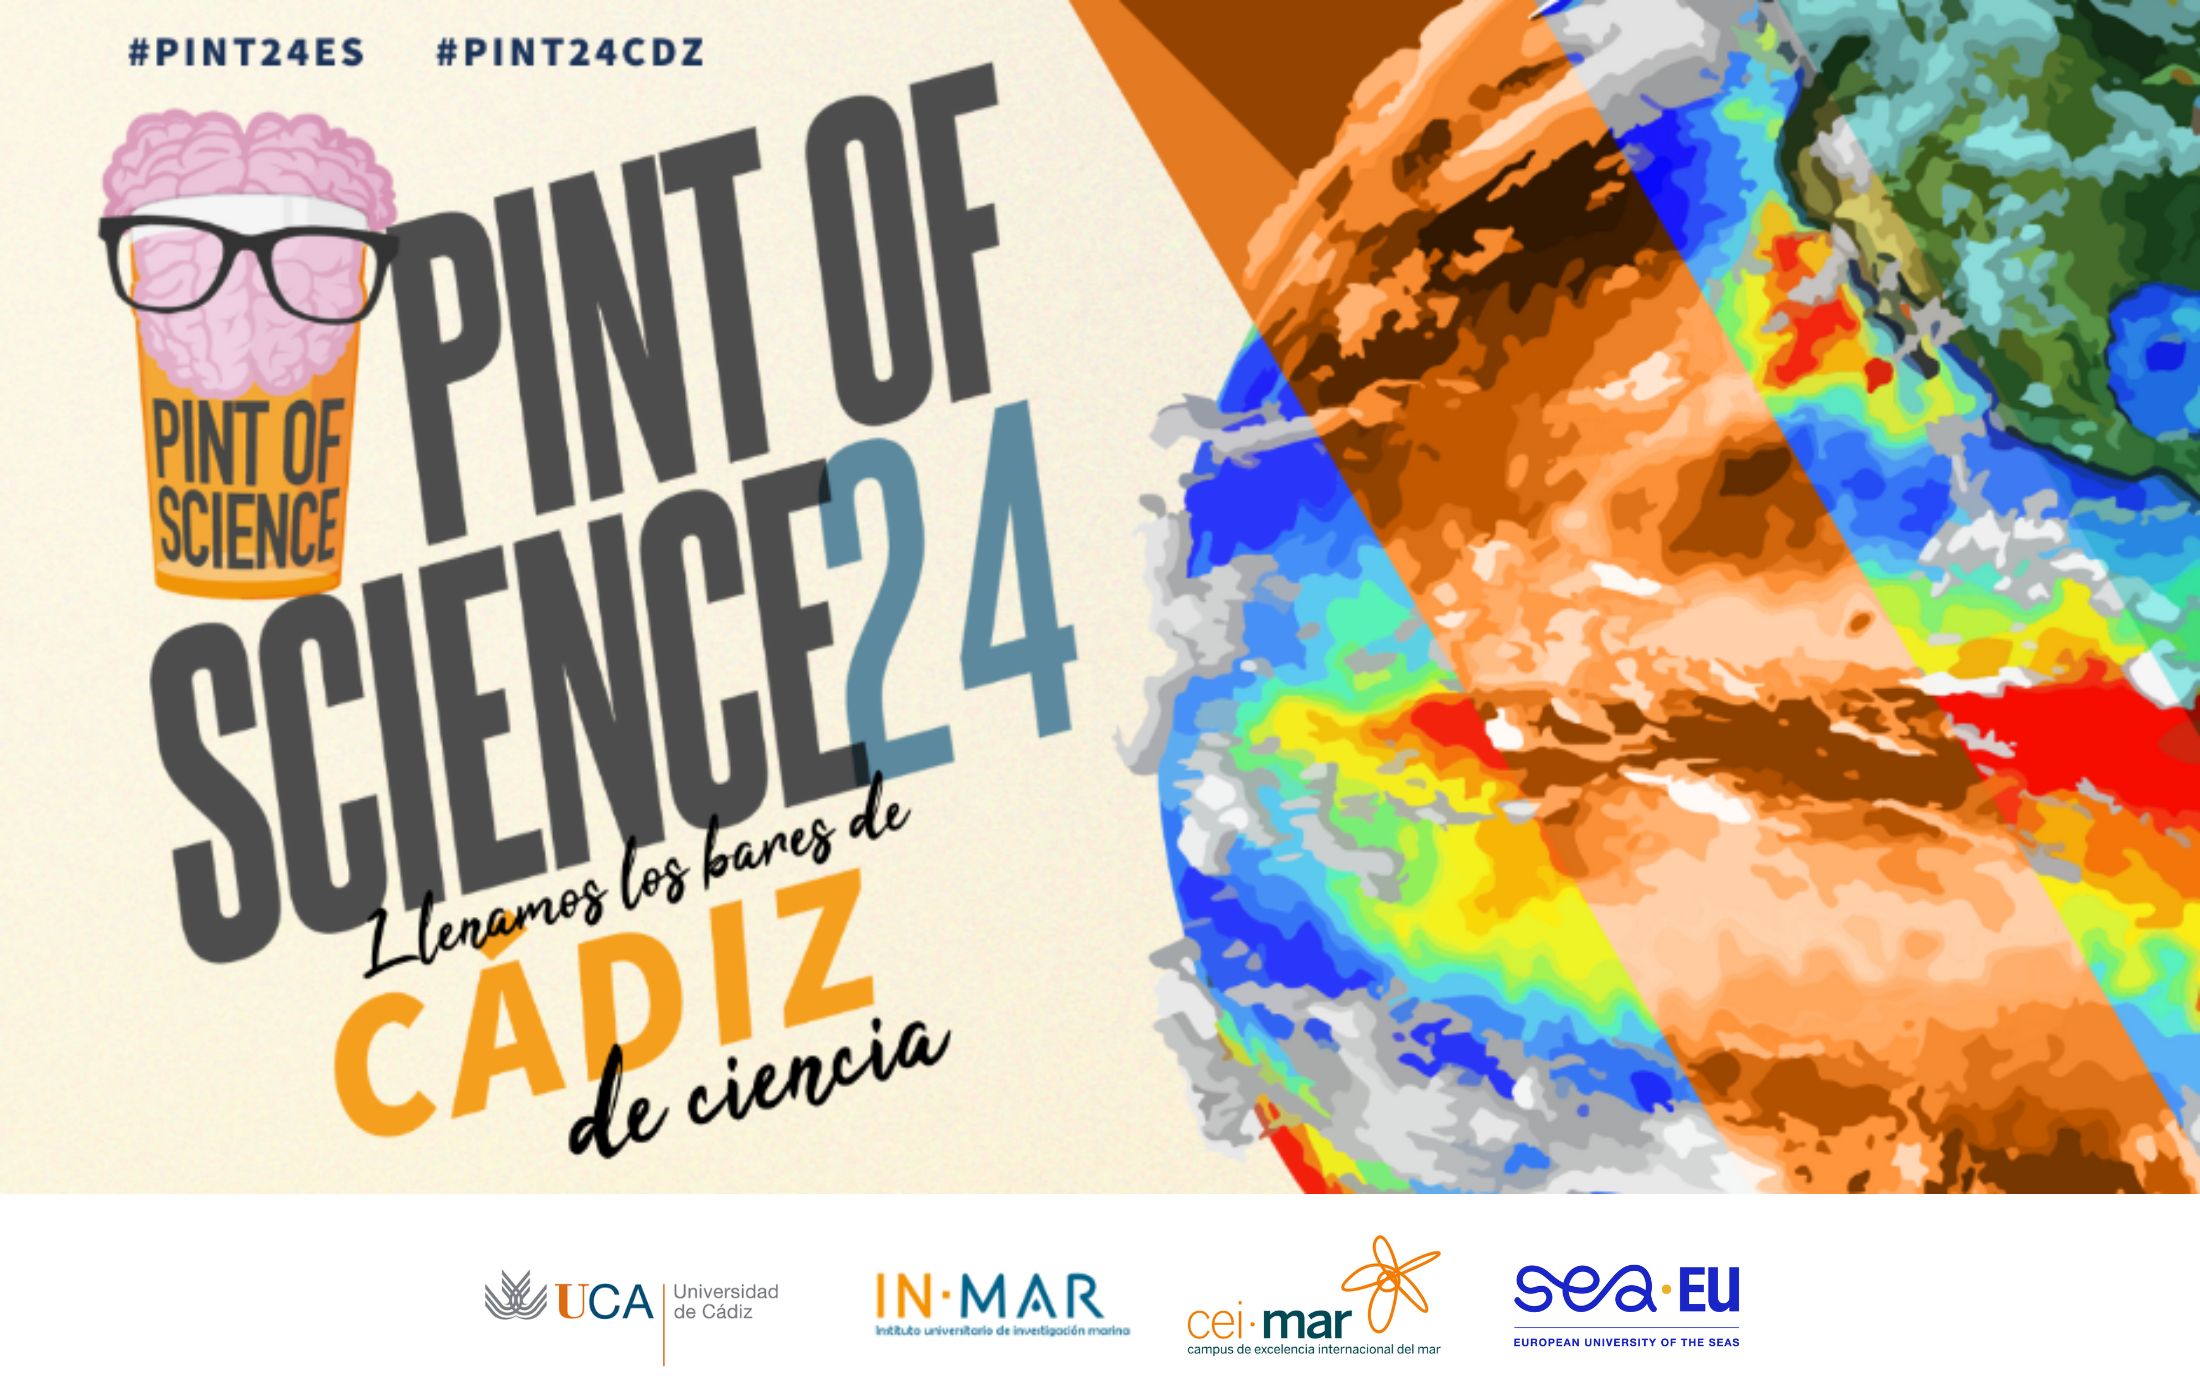 Termina el Festival Internacional “Pint of Science” con una participación amplia en los seis talleres